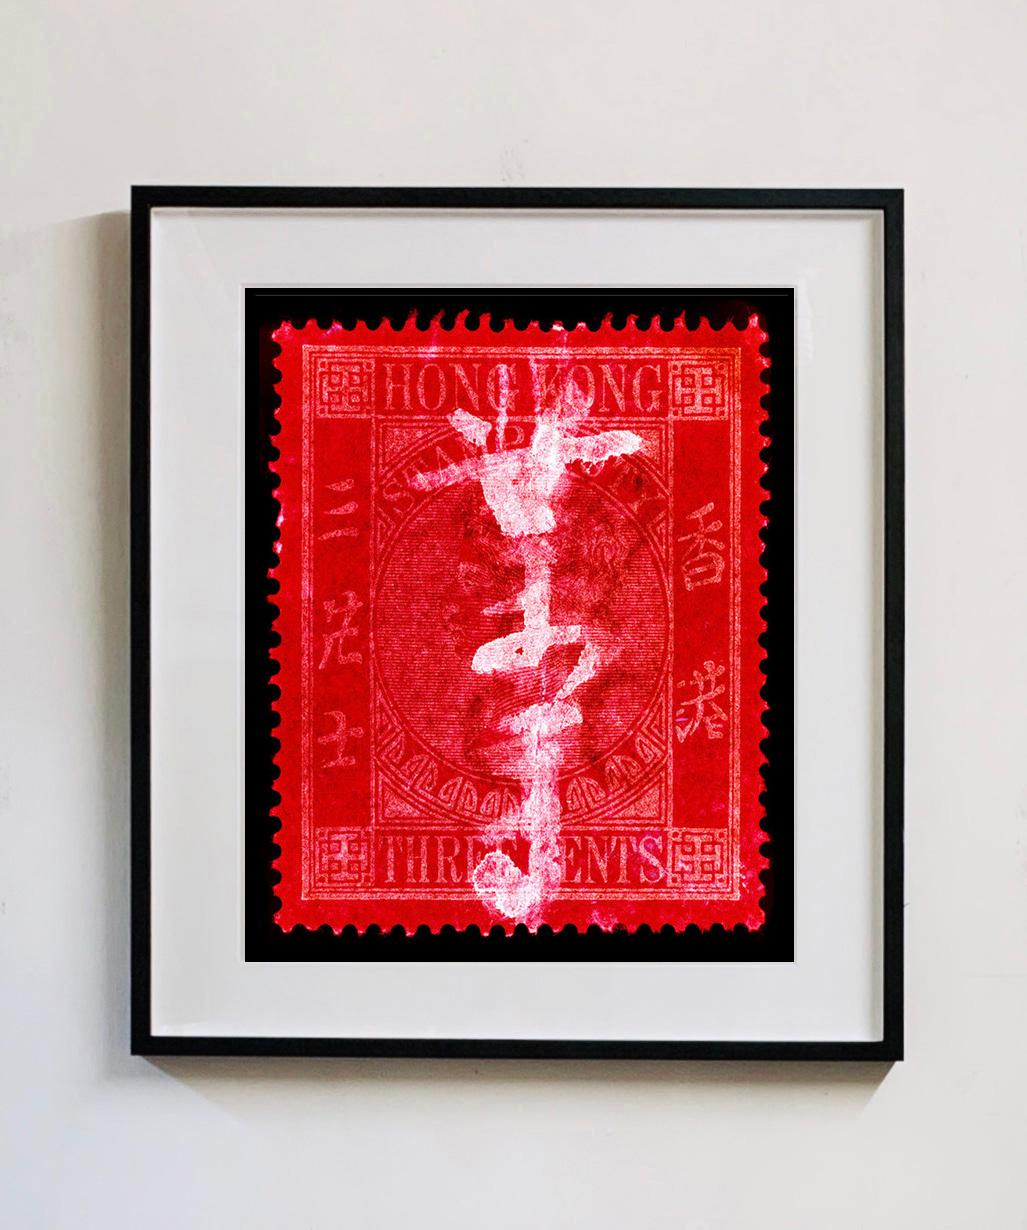 QV 3 Cents, de la collection de timbres Heidler & Heeps, série Hong Kong. La tapisserie finement détaillée du petit timbre-poste original de Hong Kong a été ramenée à la vie et rendue unique par la marque d'affranchissement et le procédé de chambre